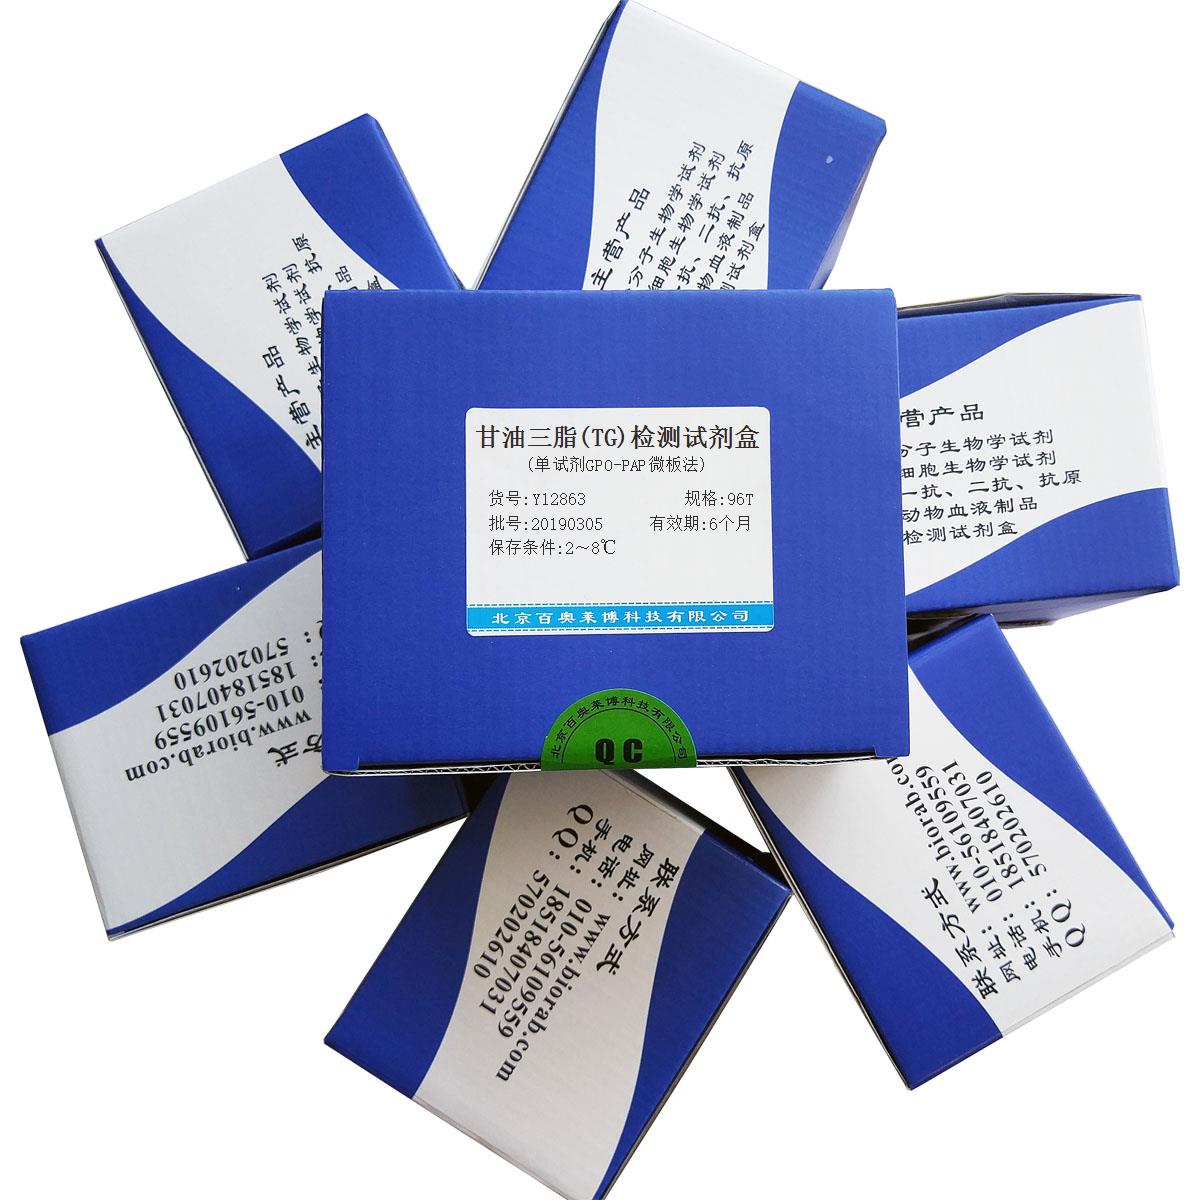 甘油三脂(TG)检测试剂盒(单试剂GPO-PAP微板法)